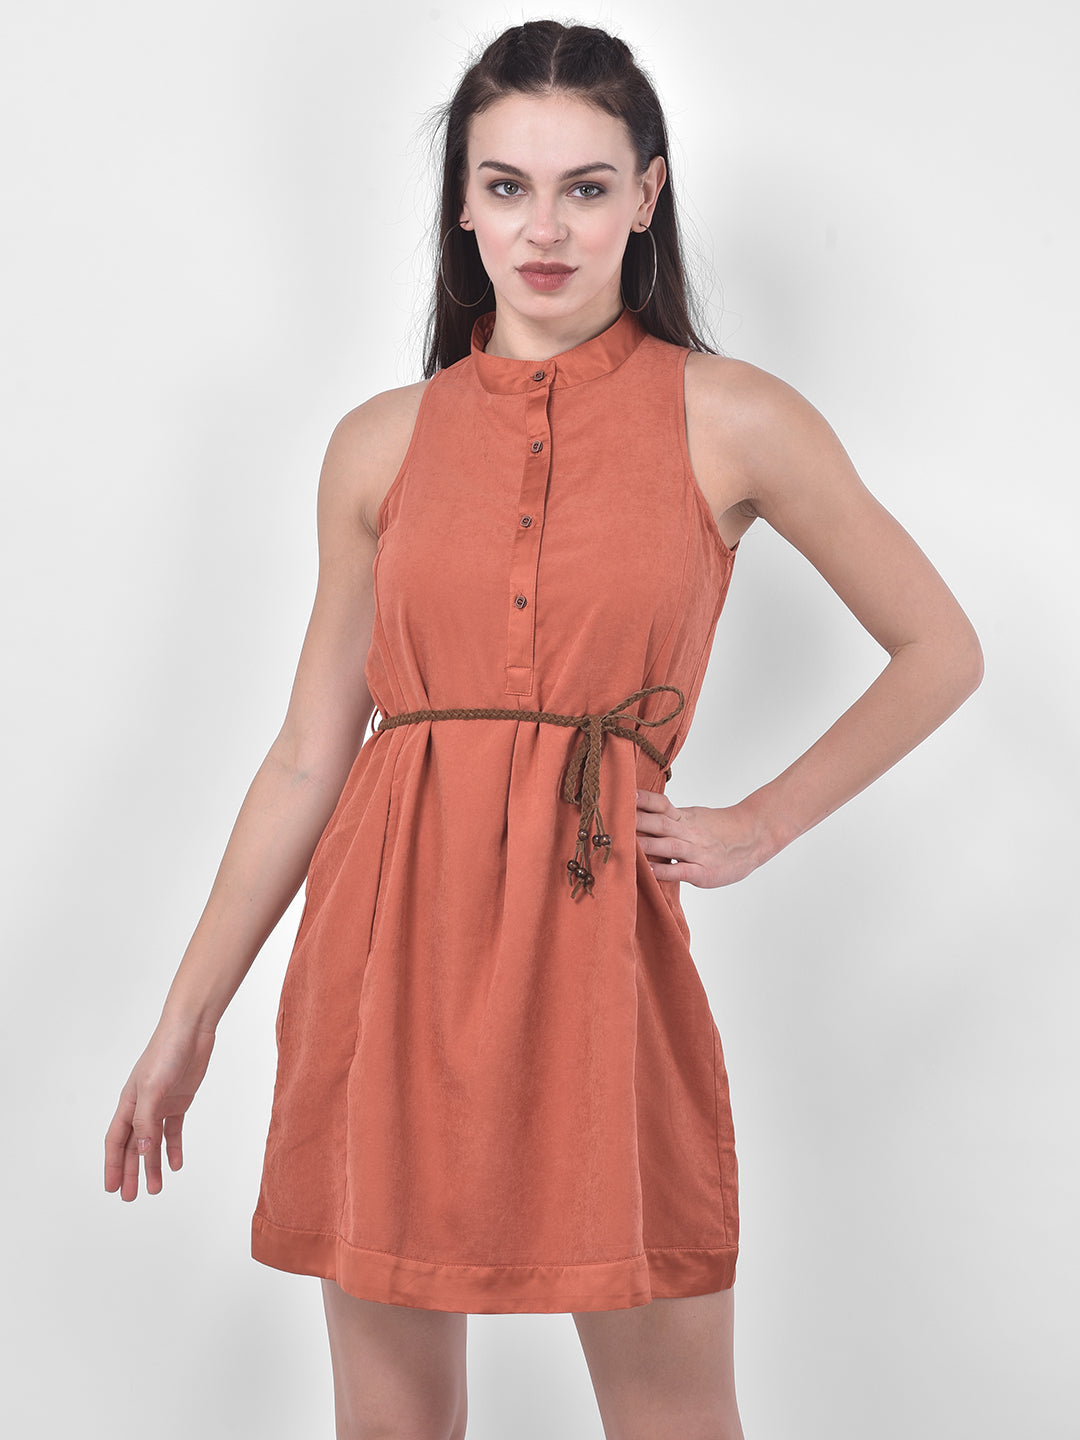 Rust Sleeveless A-Line Dress